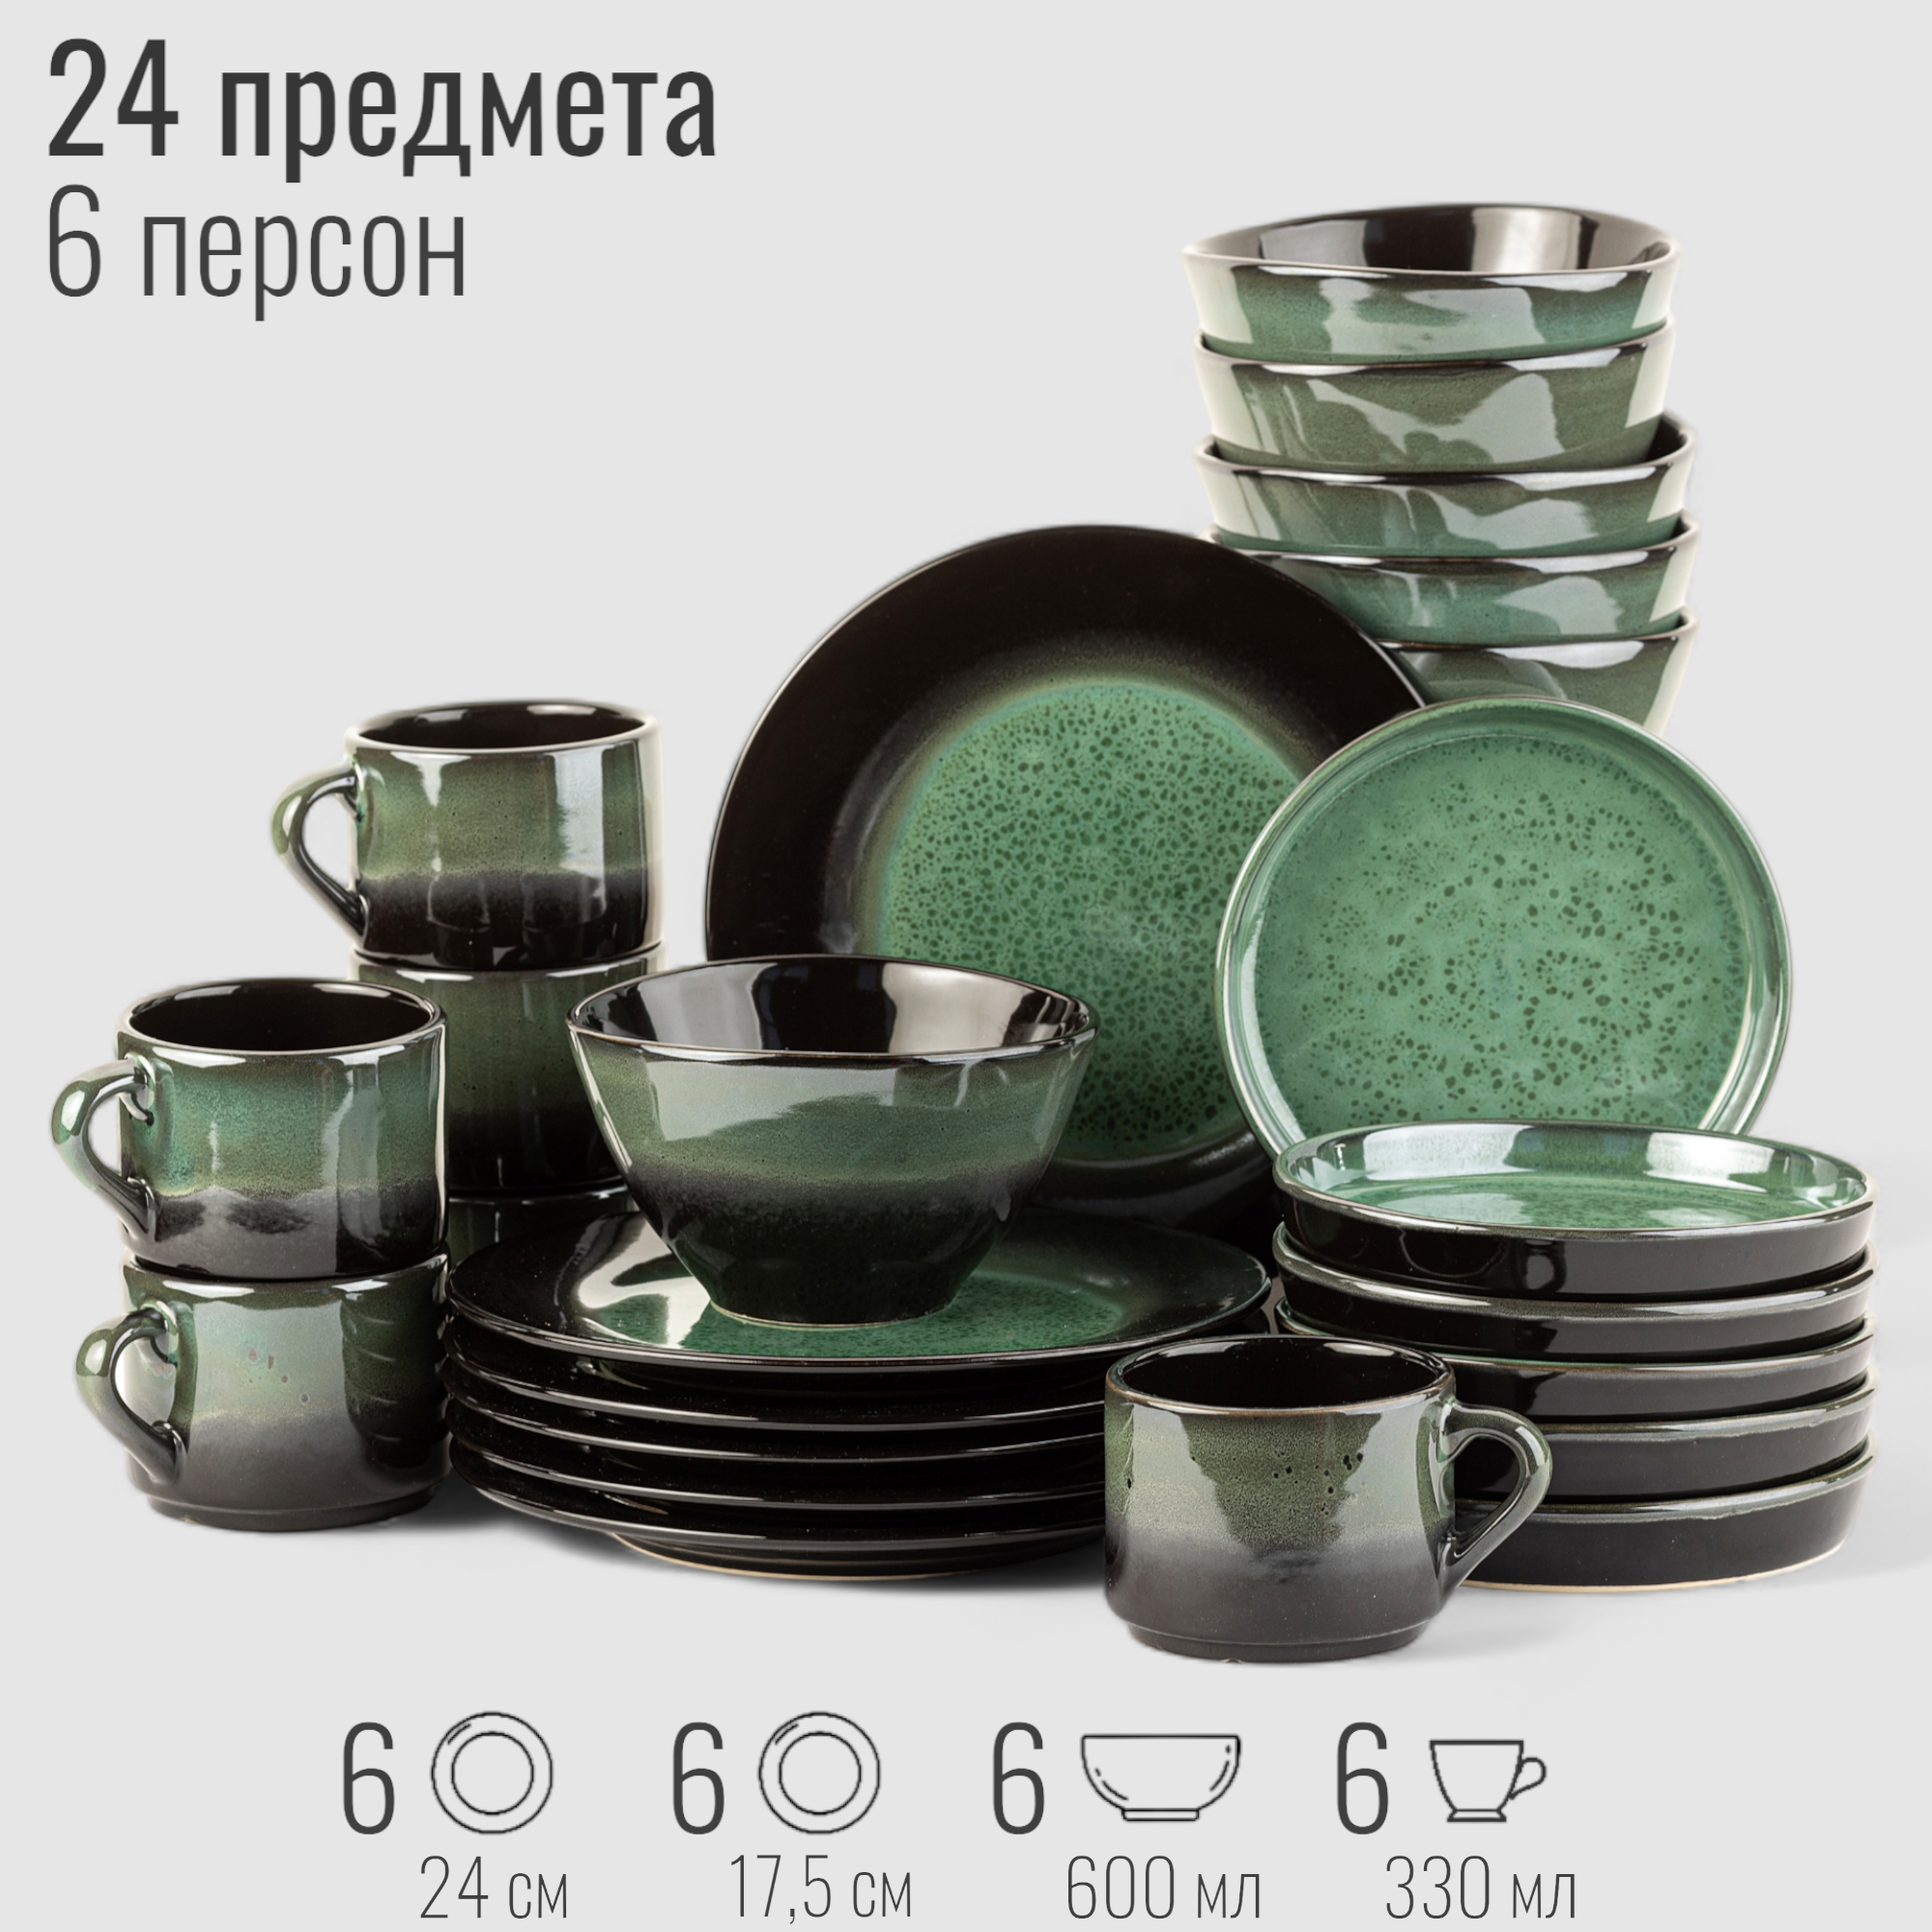 Набор посуды столовой на 6 персон, 24 предмета "Бордер", сервиз обеденный Верде-Ноте, фарфор